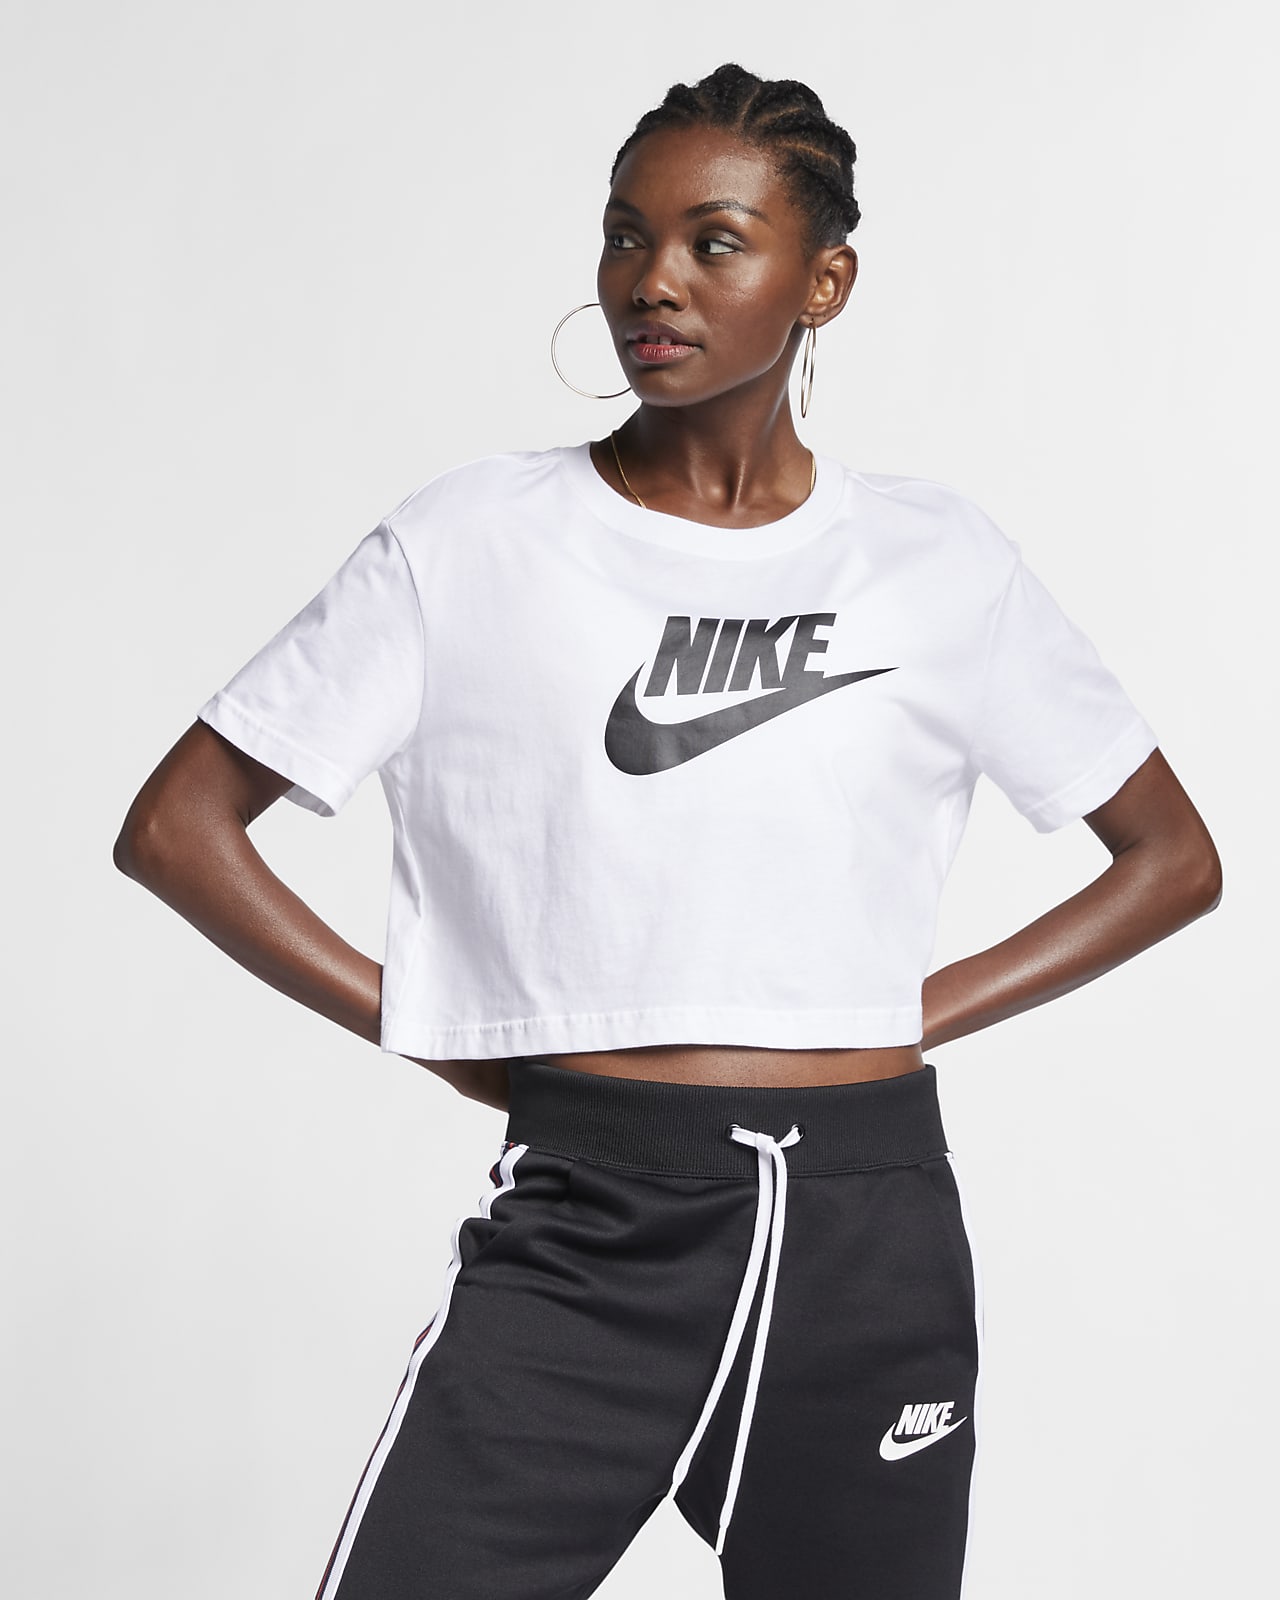 Women's White Tops & T-Shirts. Nike LU